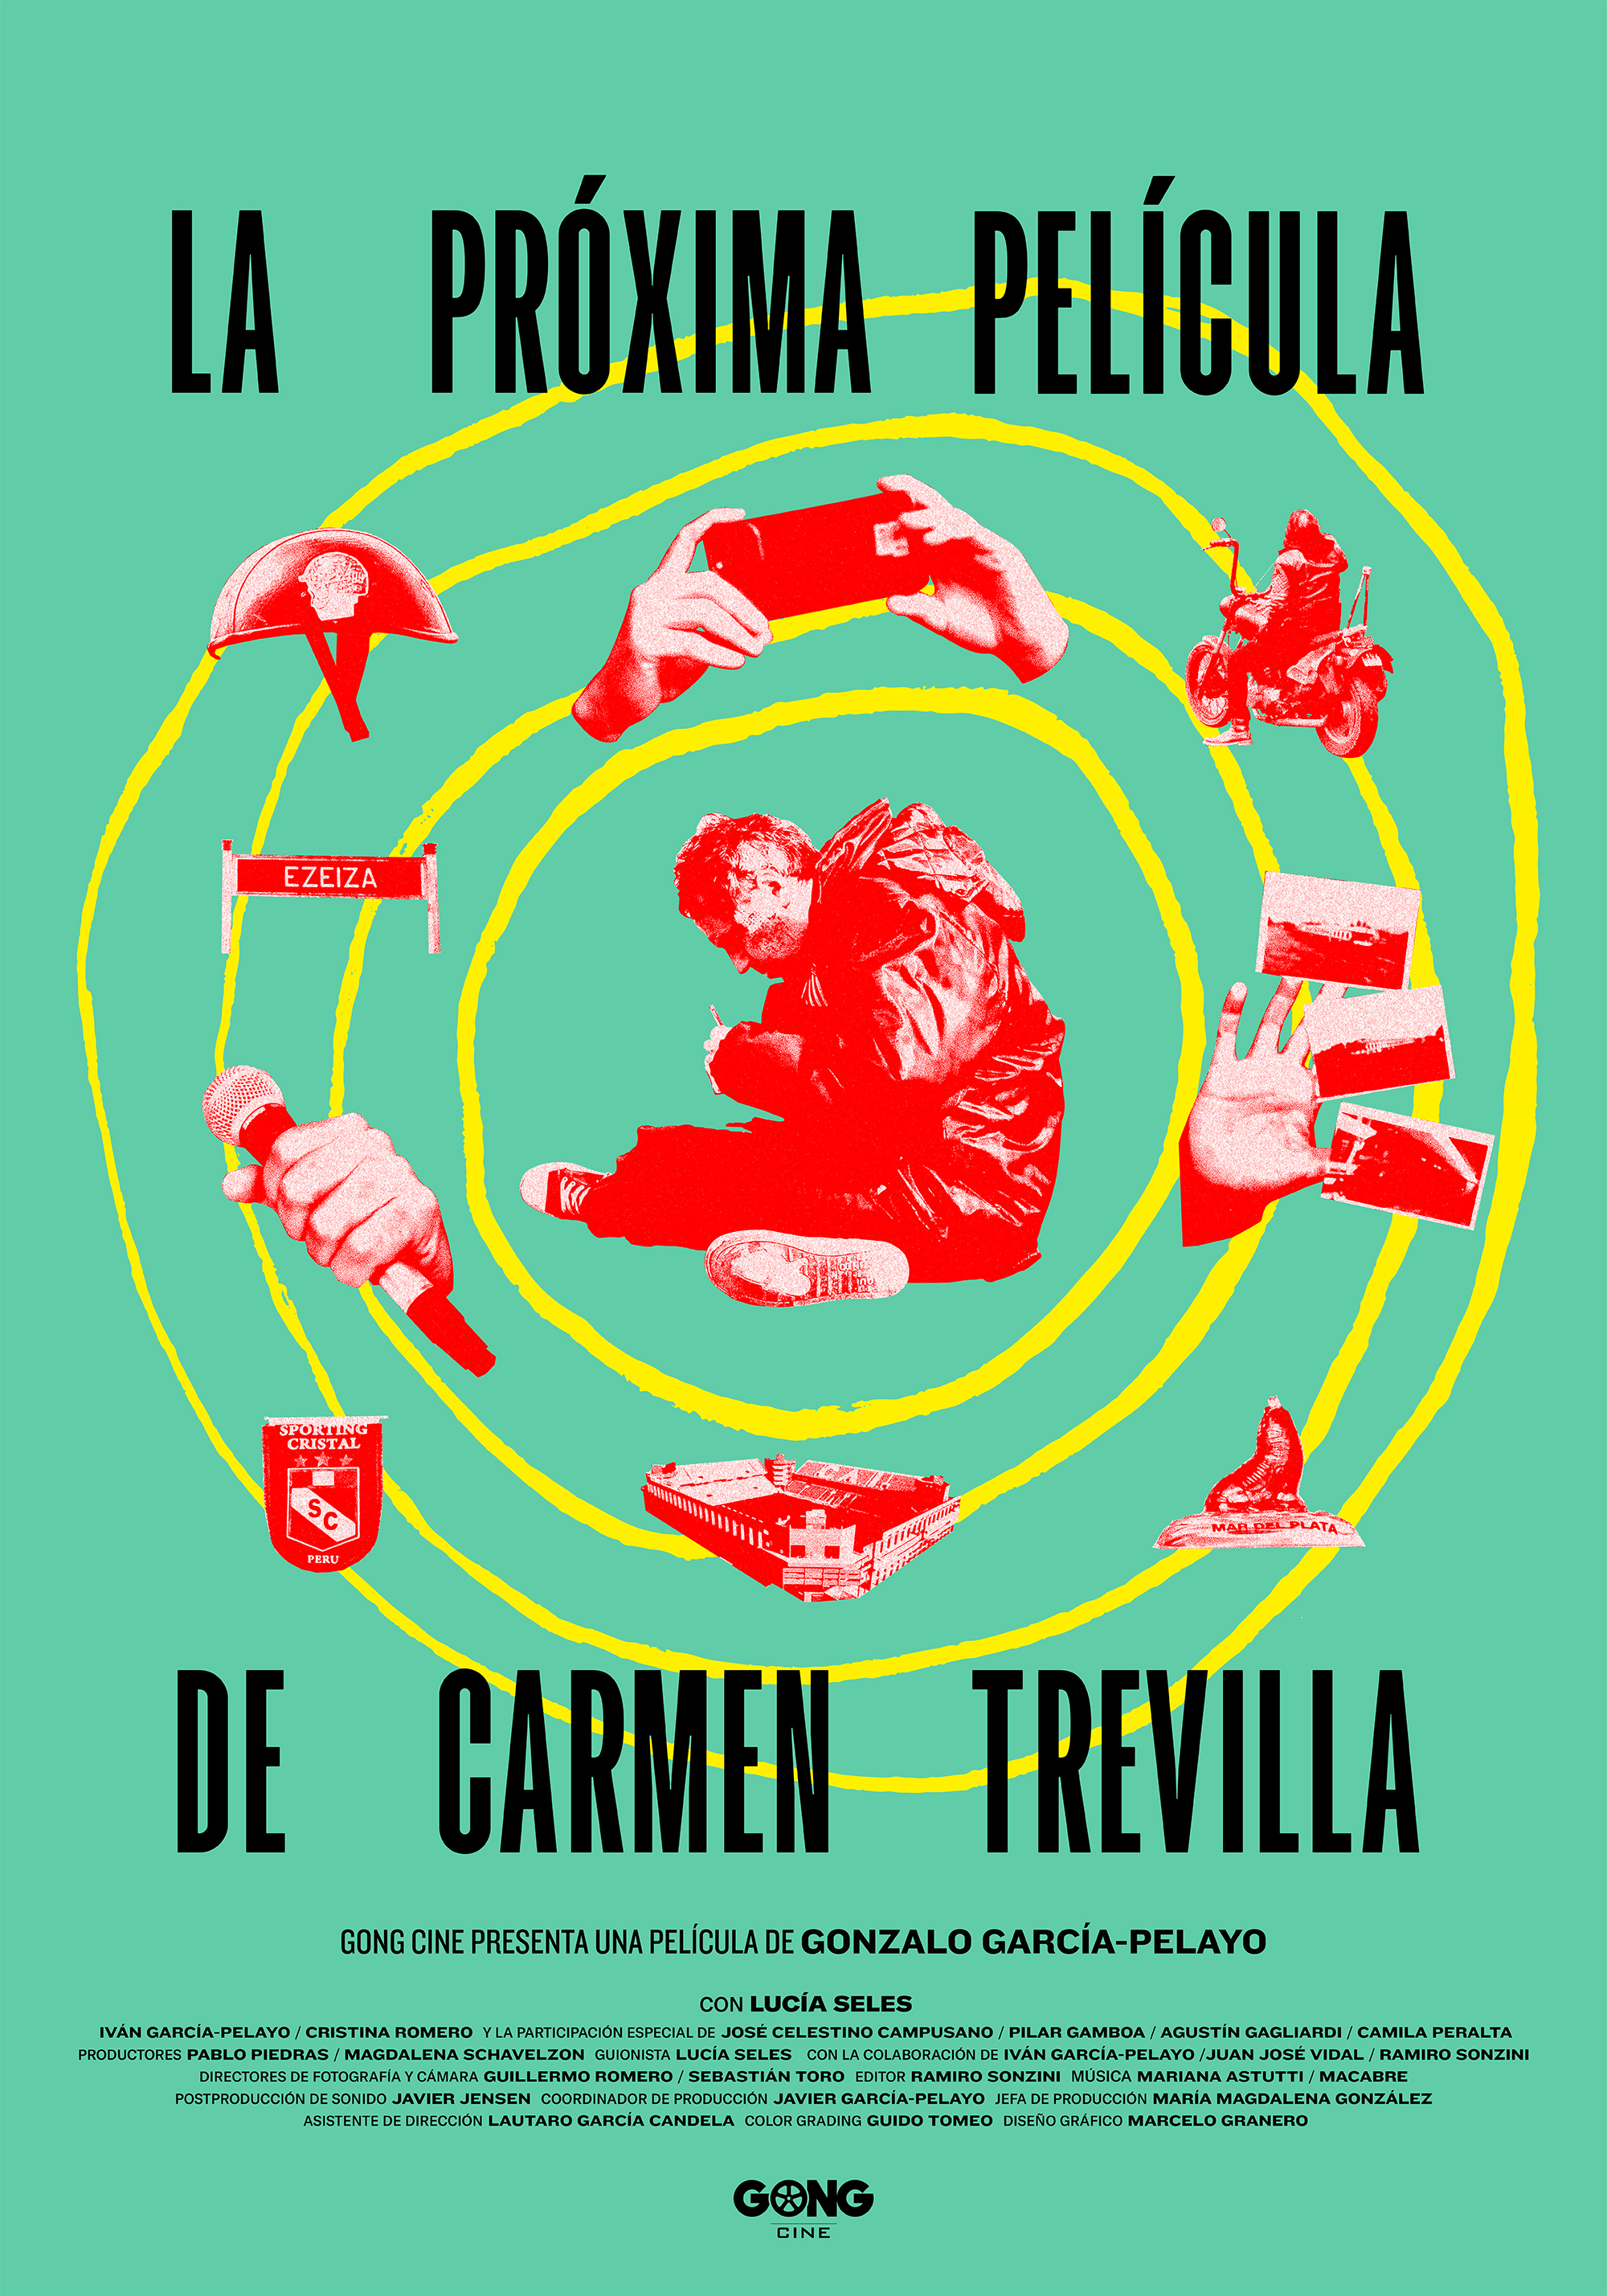 La próxima pelicula de Carmen Trevilla